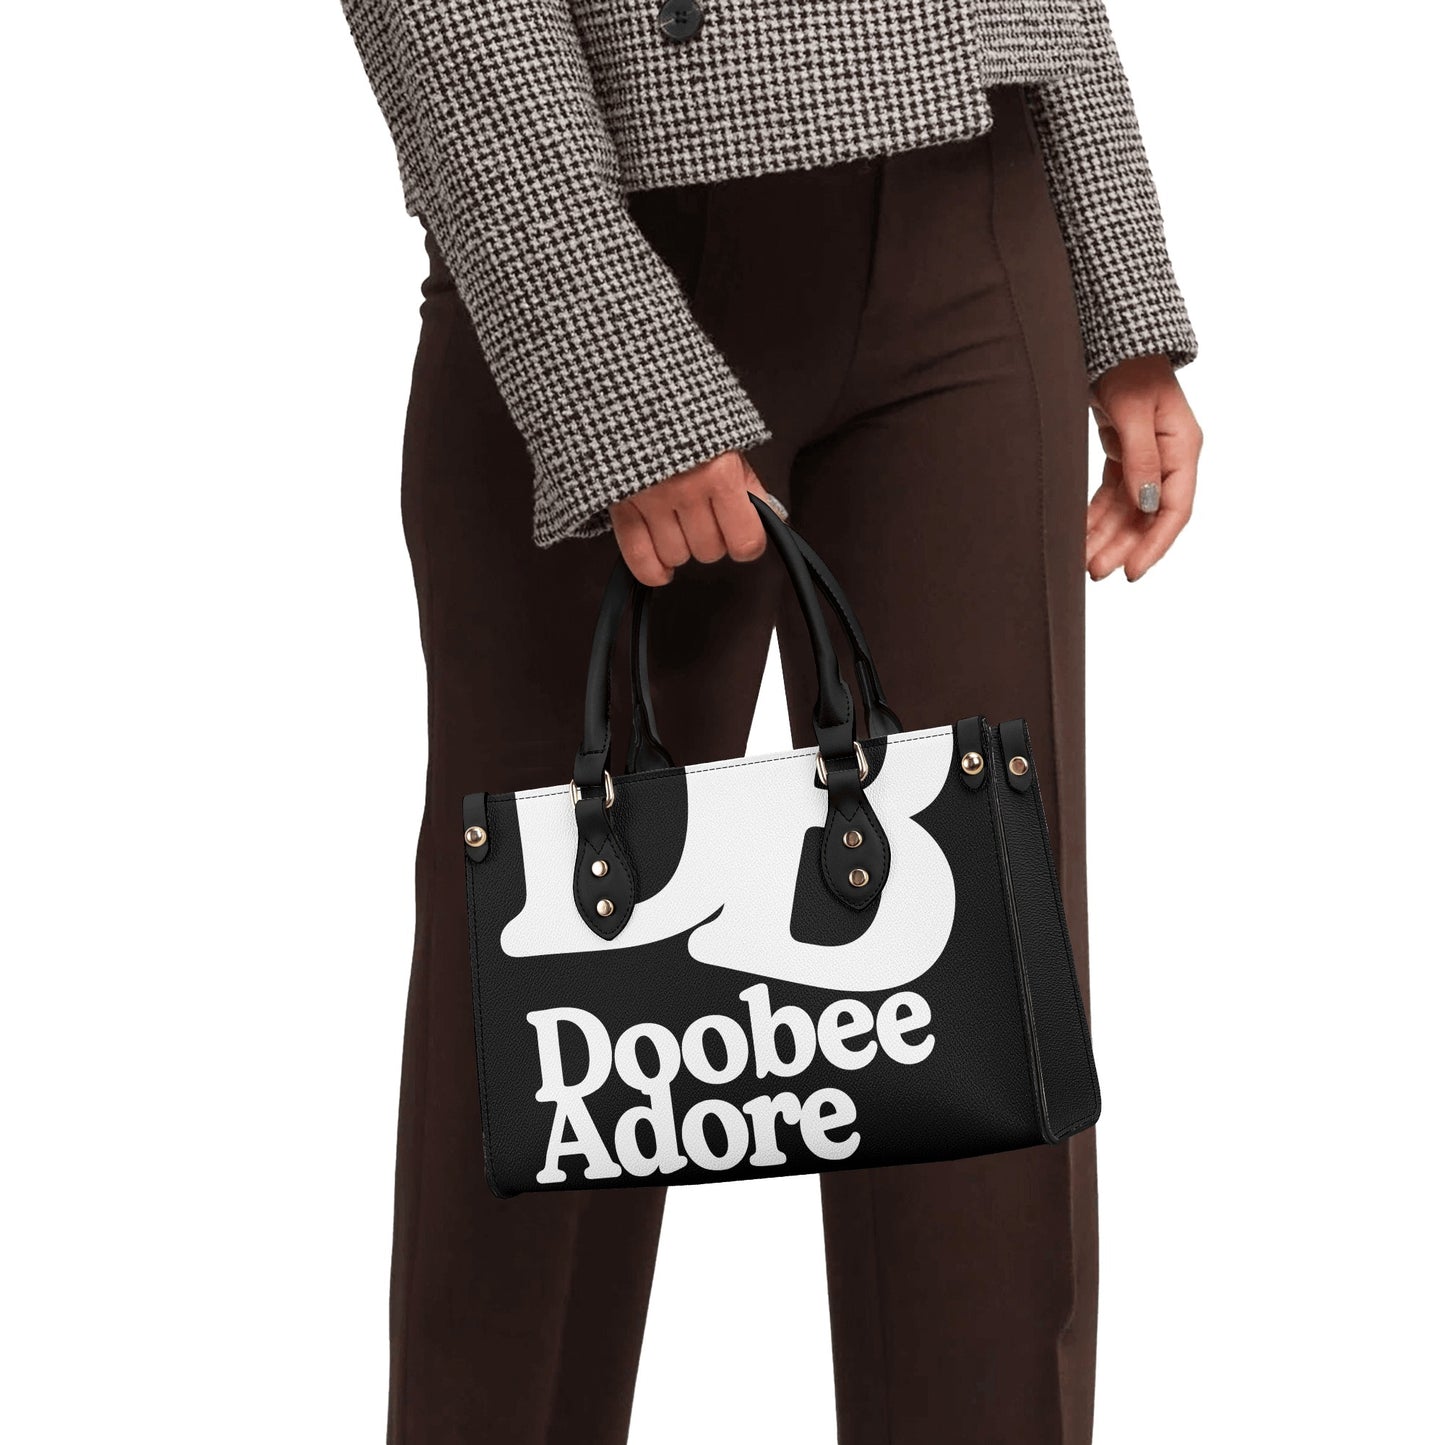 Doobee Adore Luxury Tote Bag Black Edition